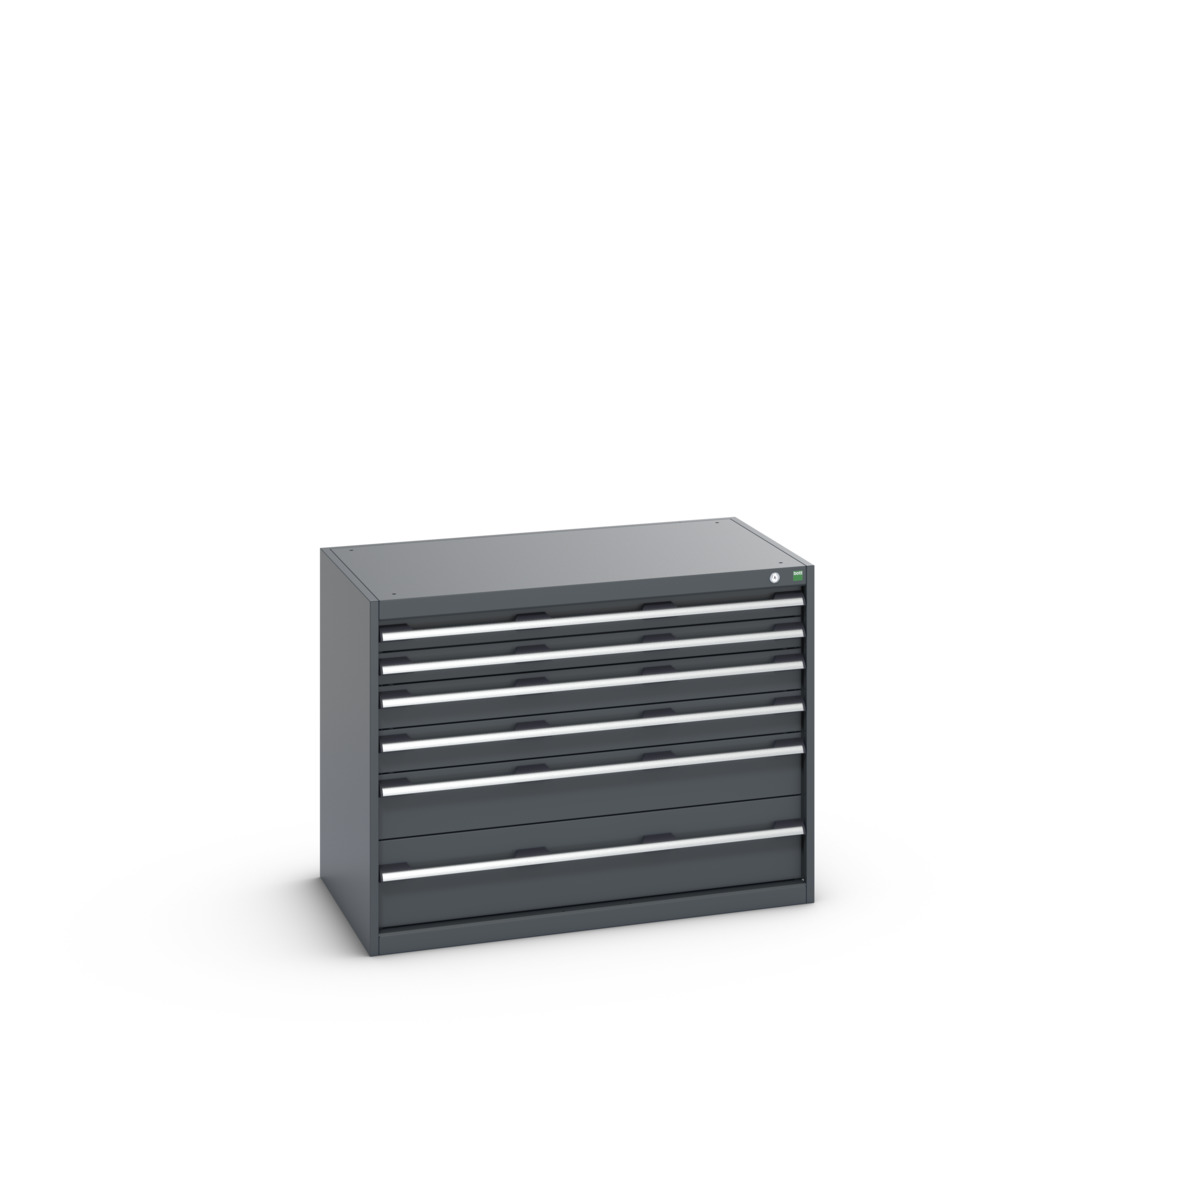 40021191.77V - cubio drawer cabinet